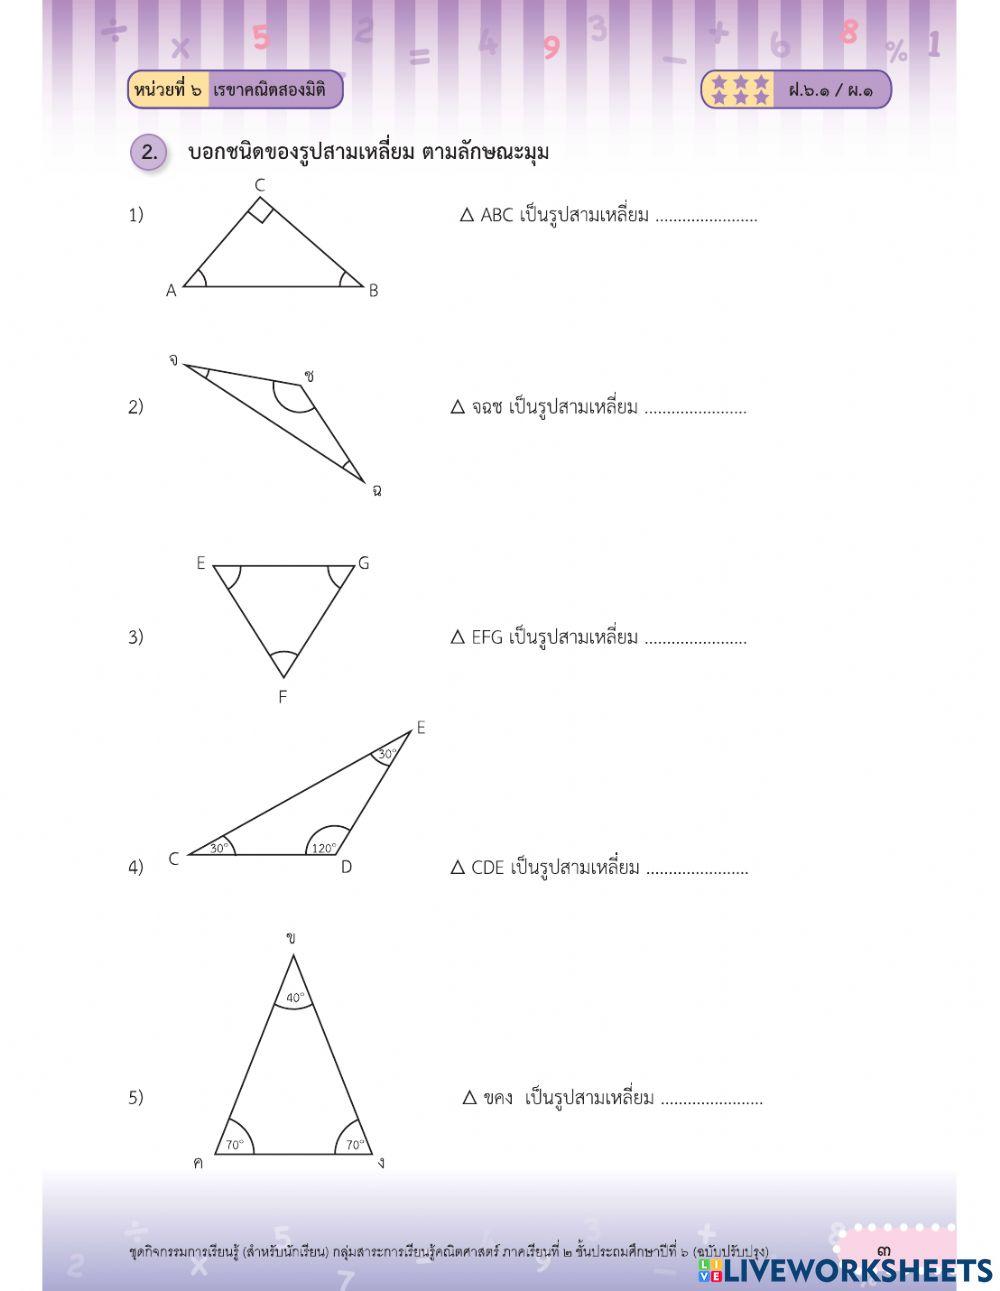 ลักษณะของรูปสามเหลี่ยมและการจาแนกชนิดของรูปสามเหลี่ยมโดยพิจารณาจากขนาดของมุม